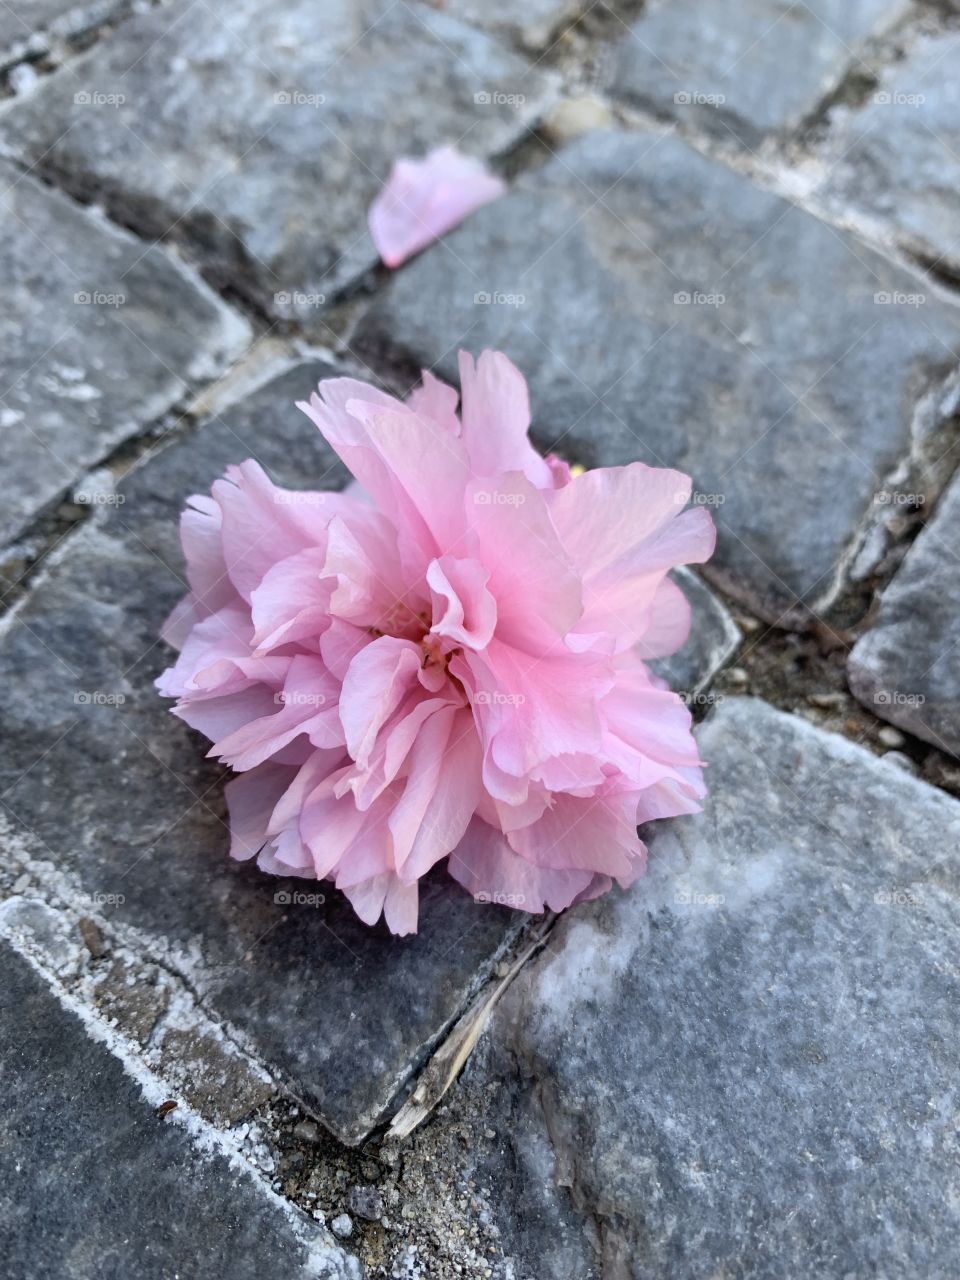 A flower on the sidewalk in Europe. 